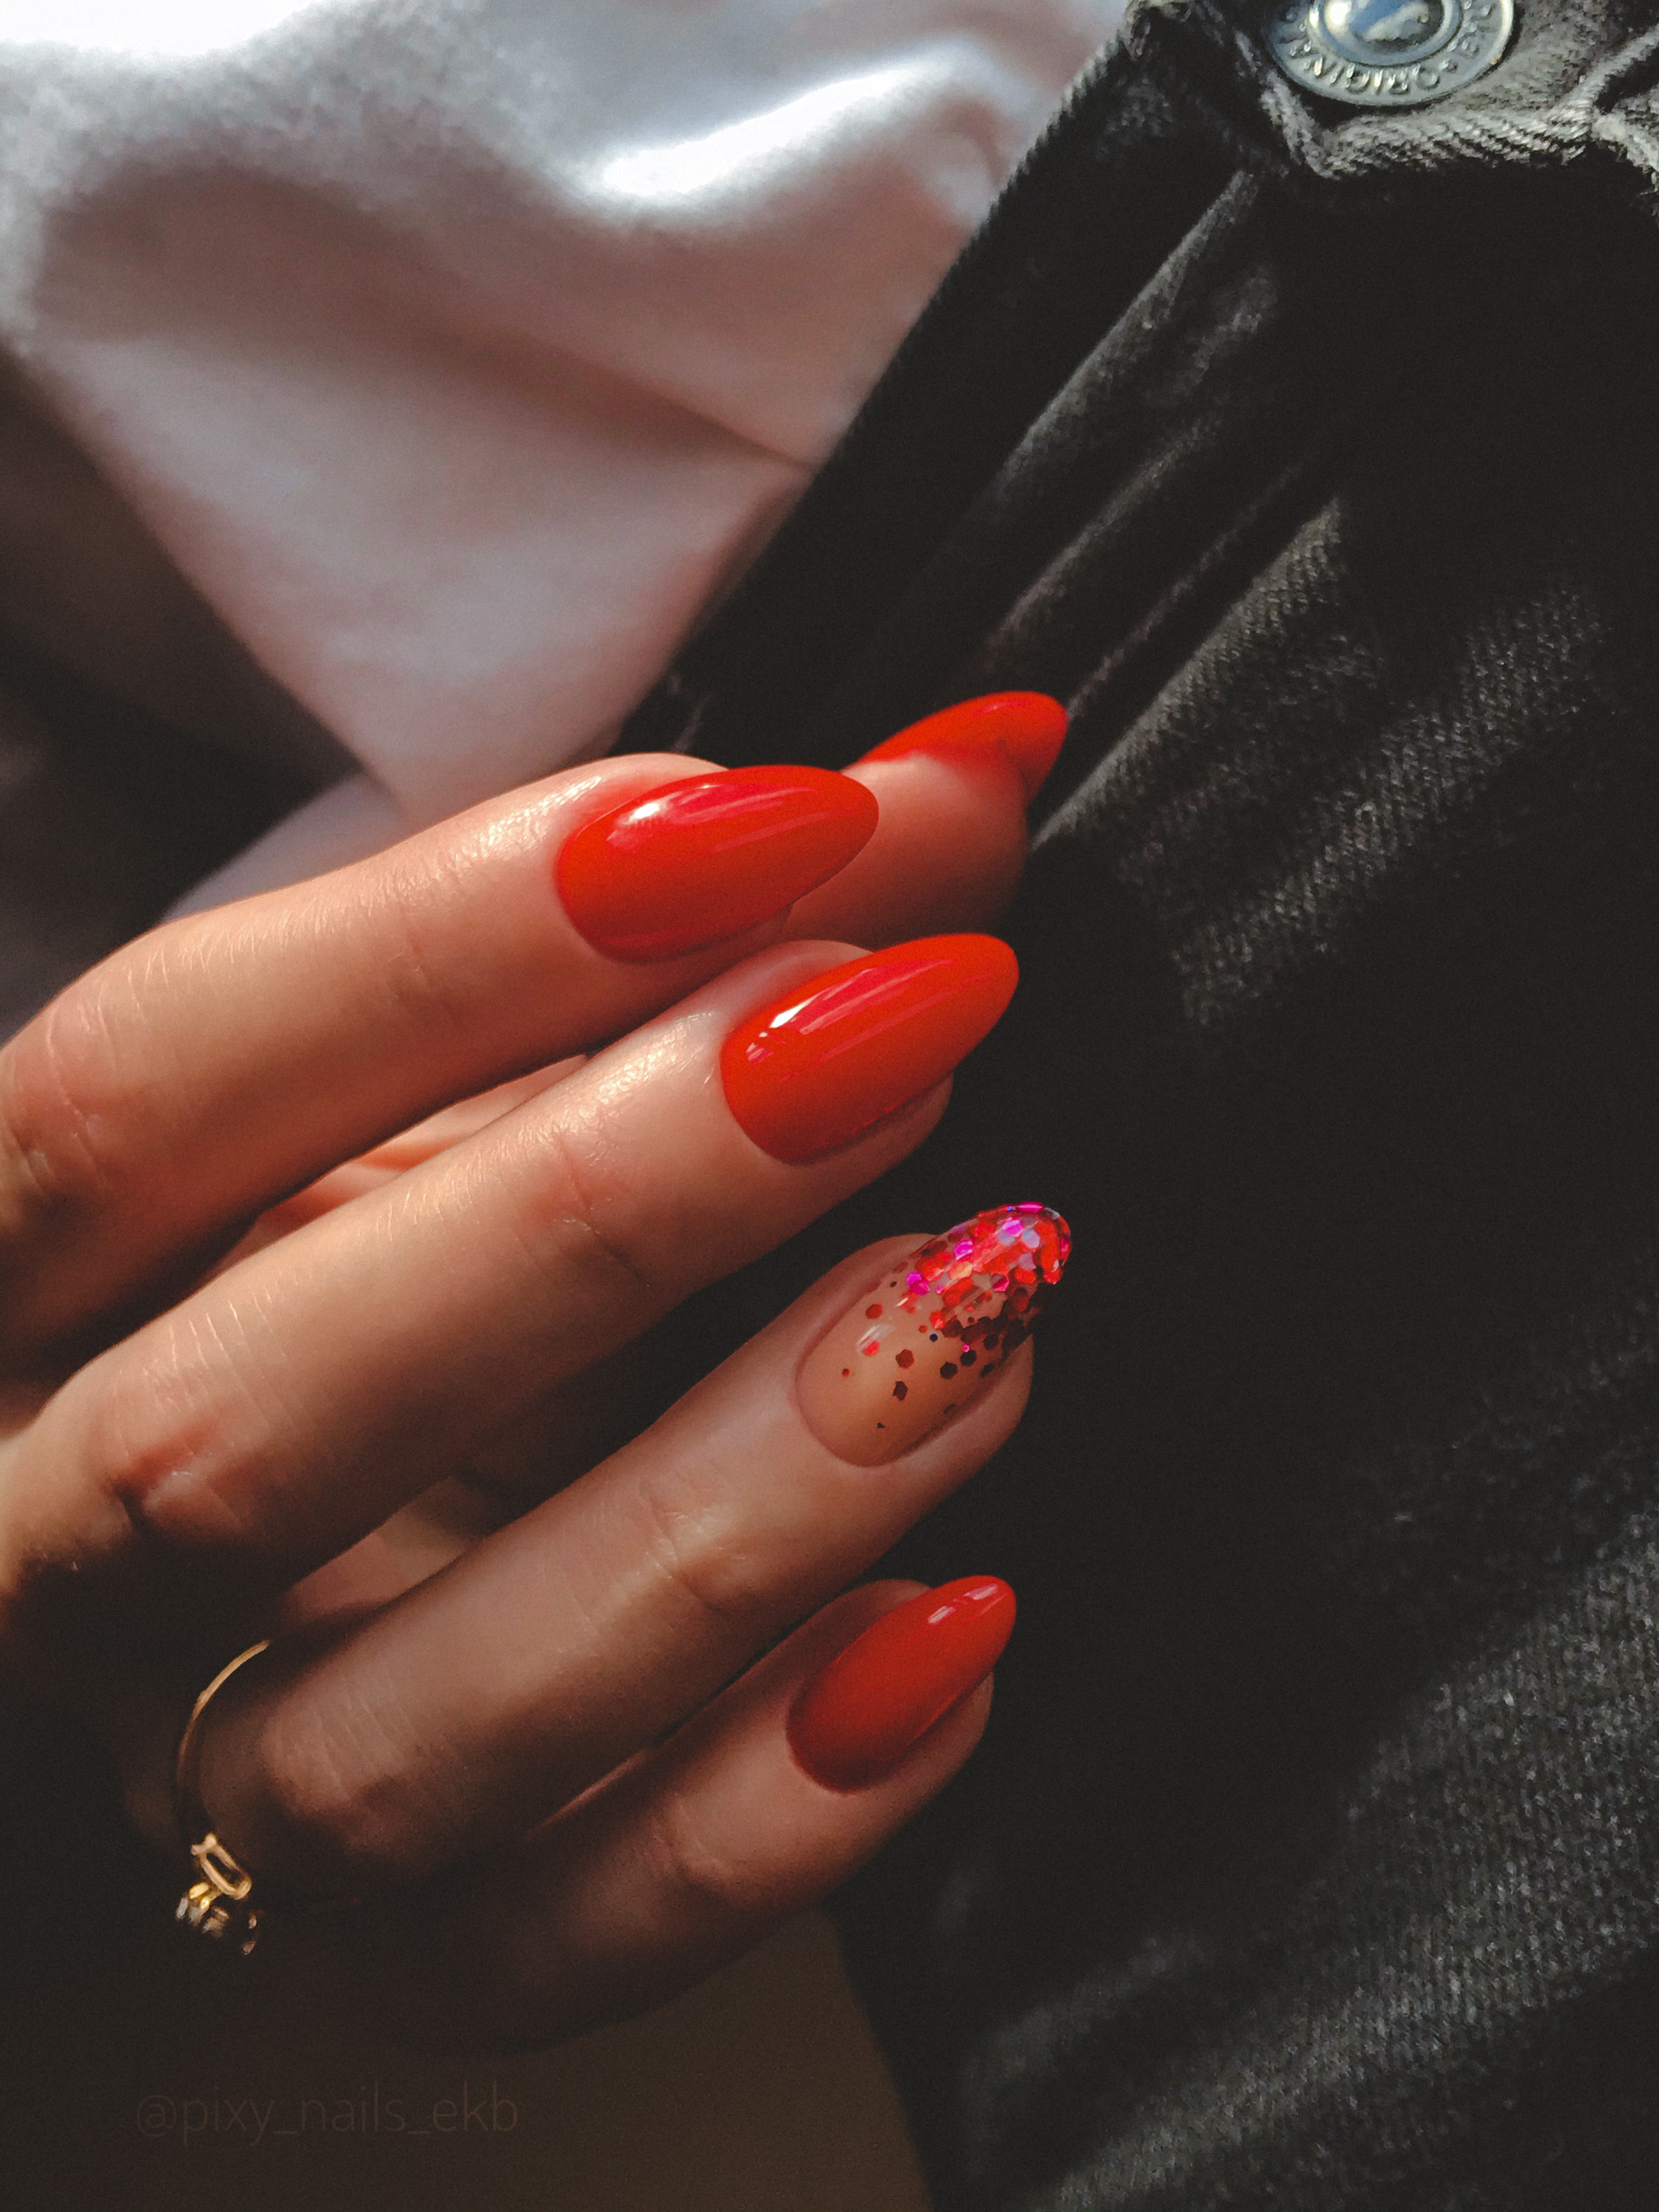 Маникюр с камифубуки в красном цвете на длинные ногти.